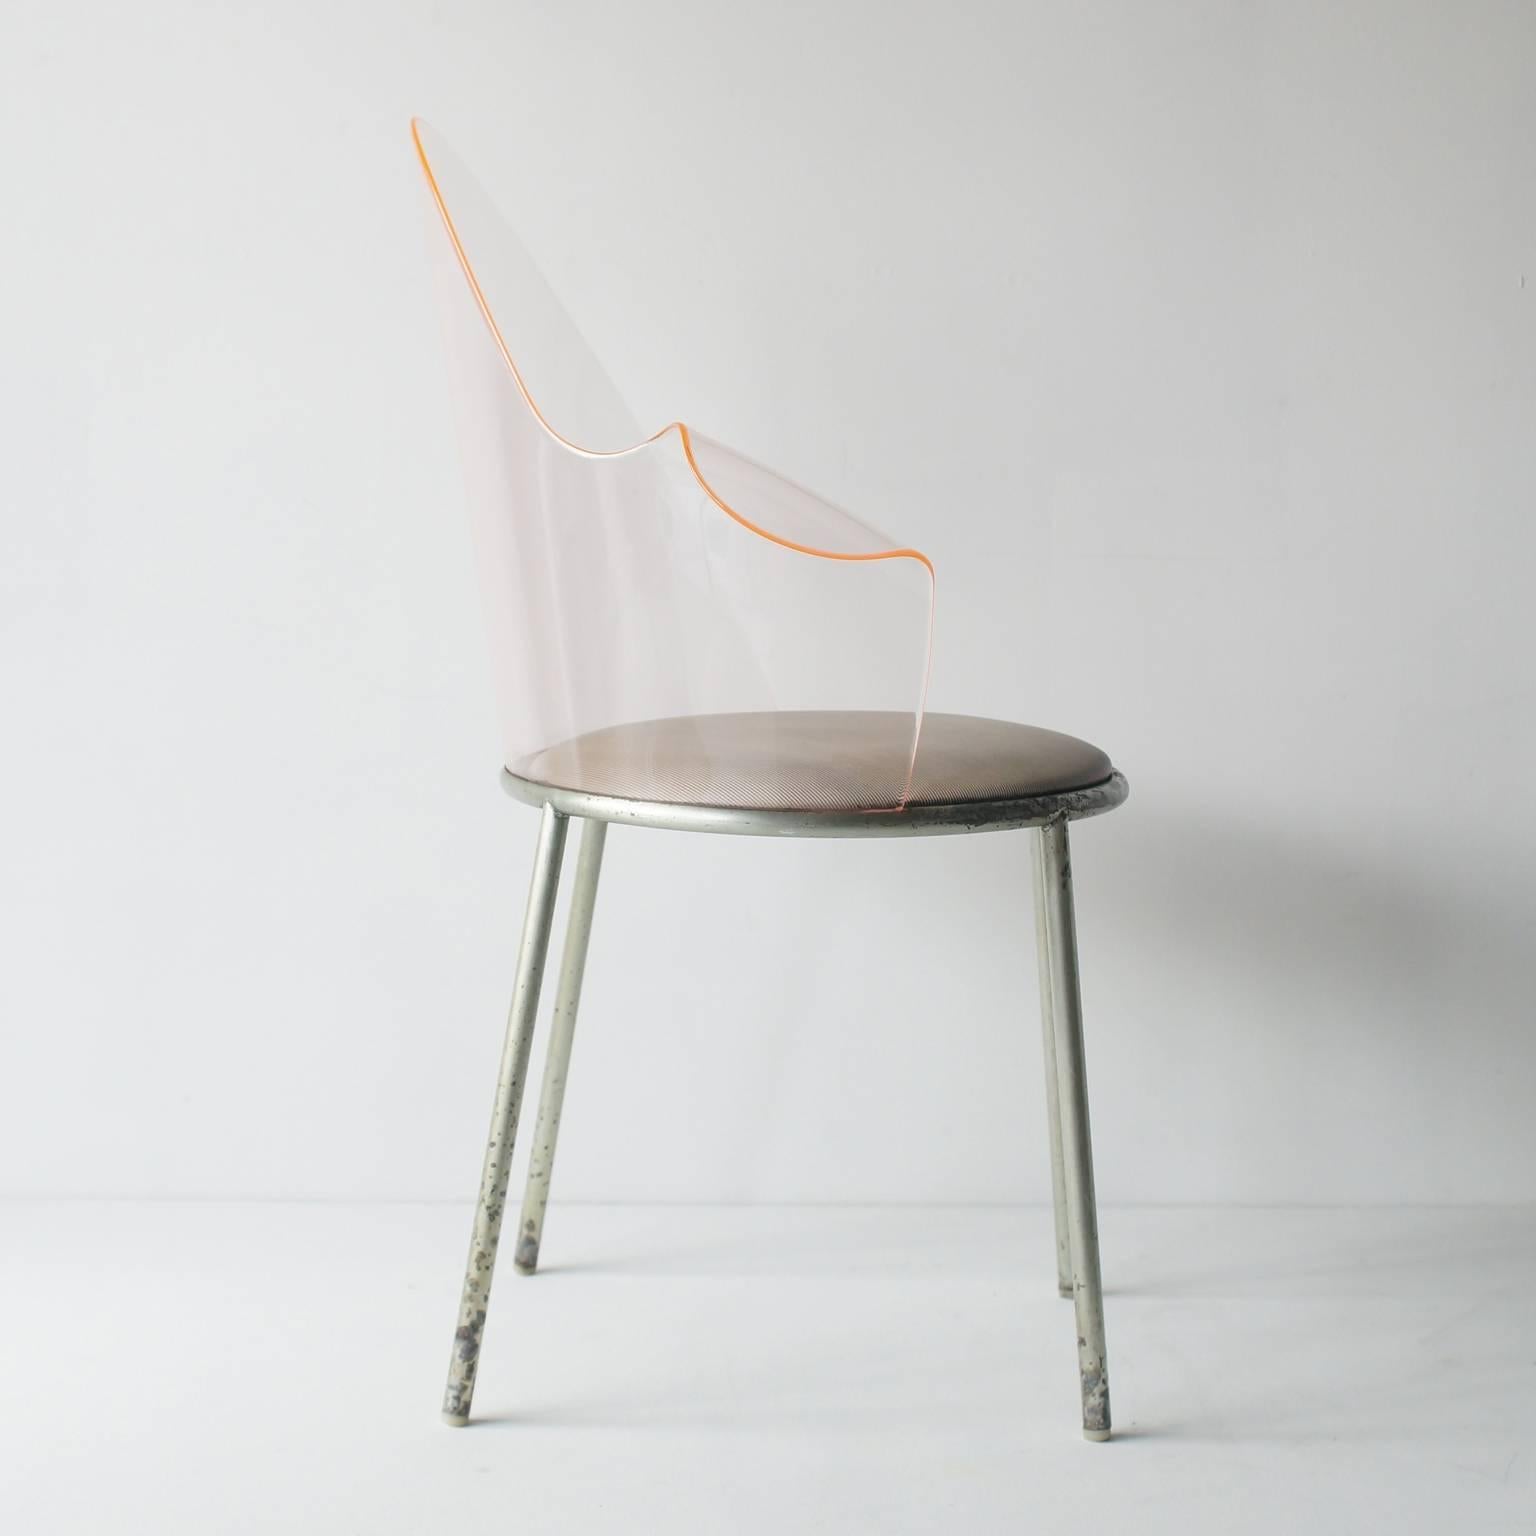 Post-Modern Acrylic Back Chair by Shiro Kuramata